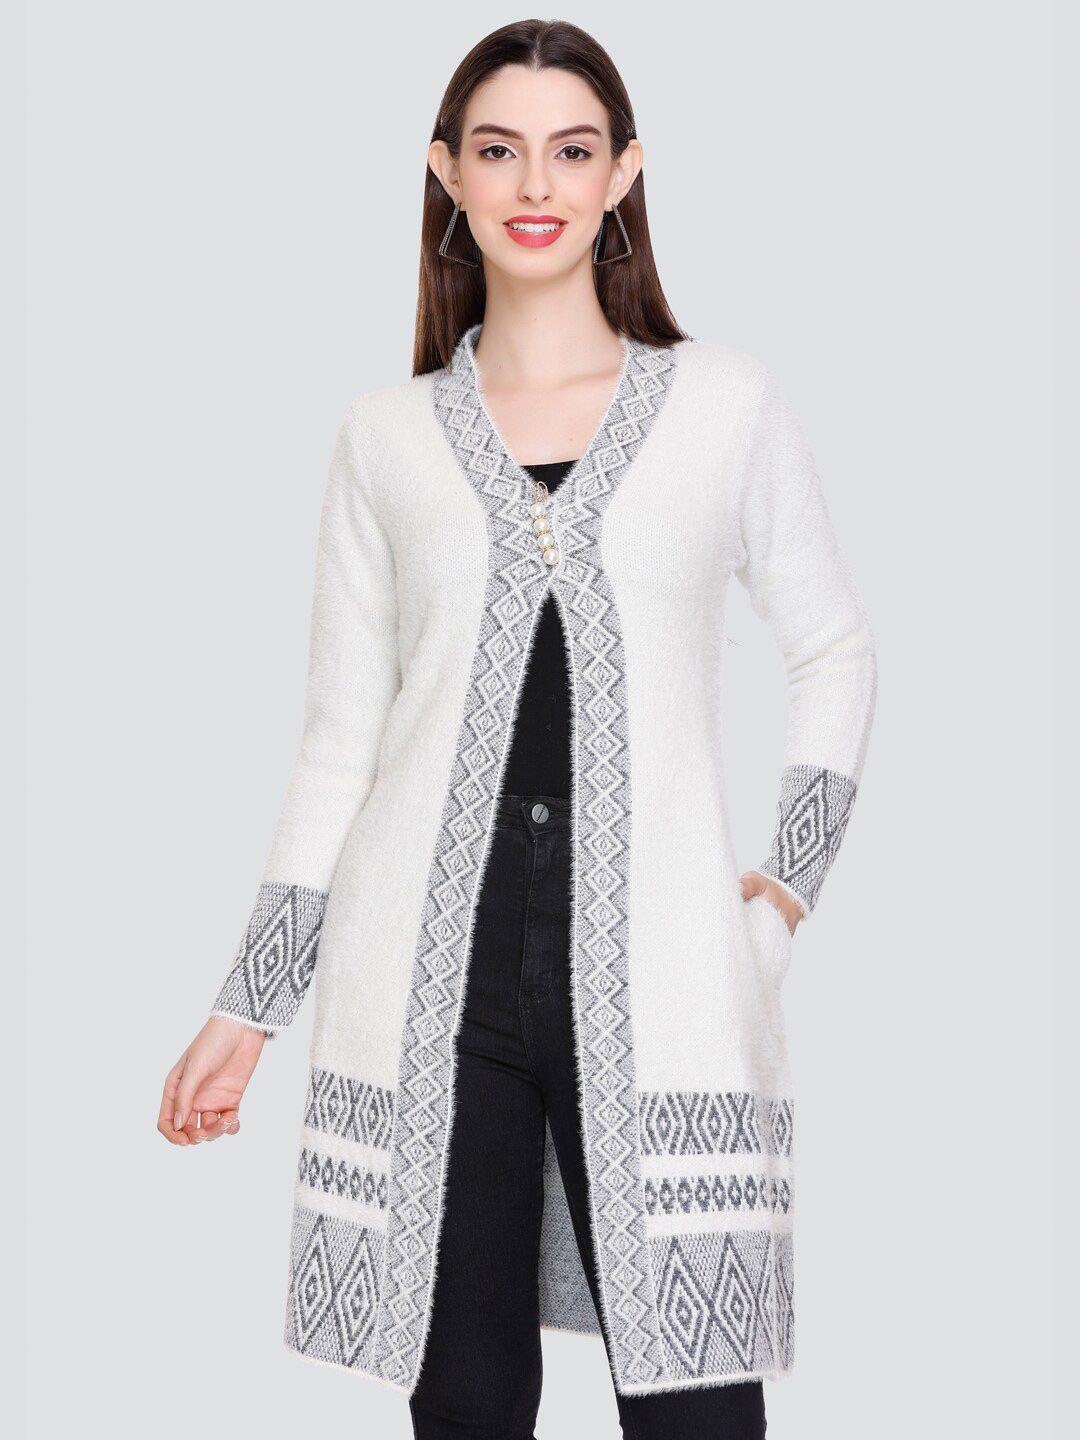 winter wonders geometric printed woollen longline cardigan